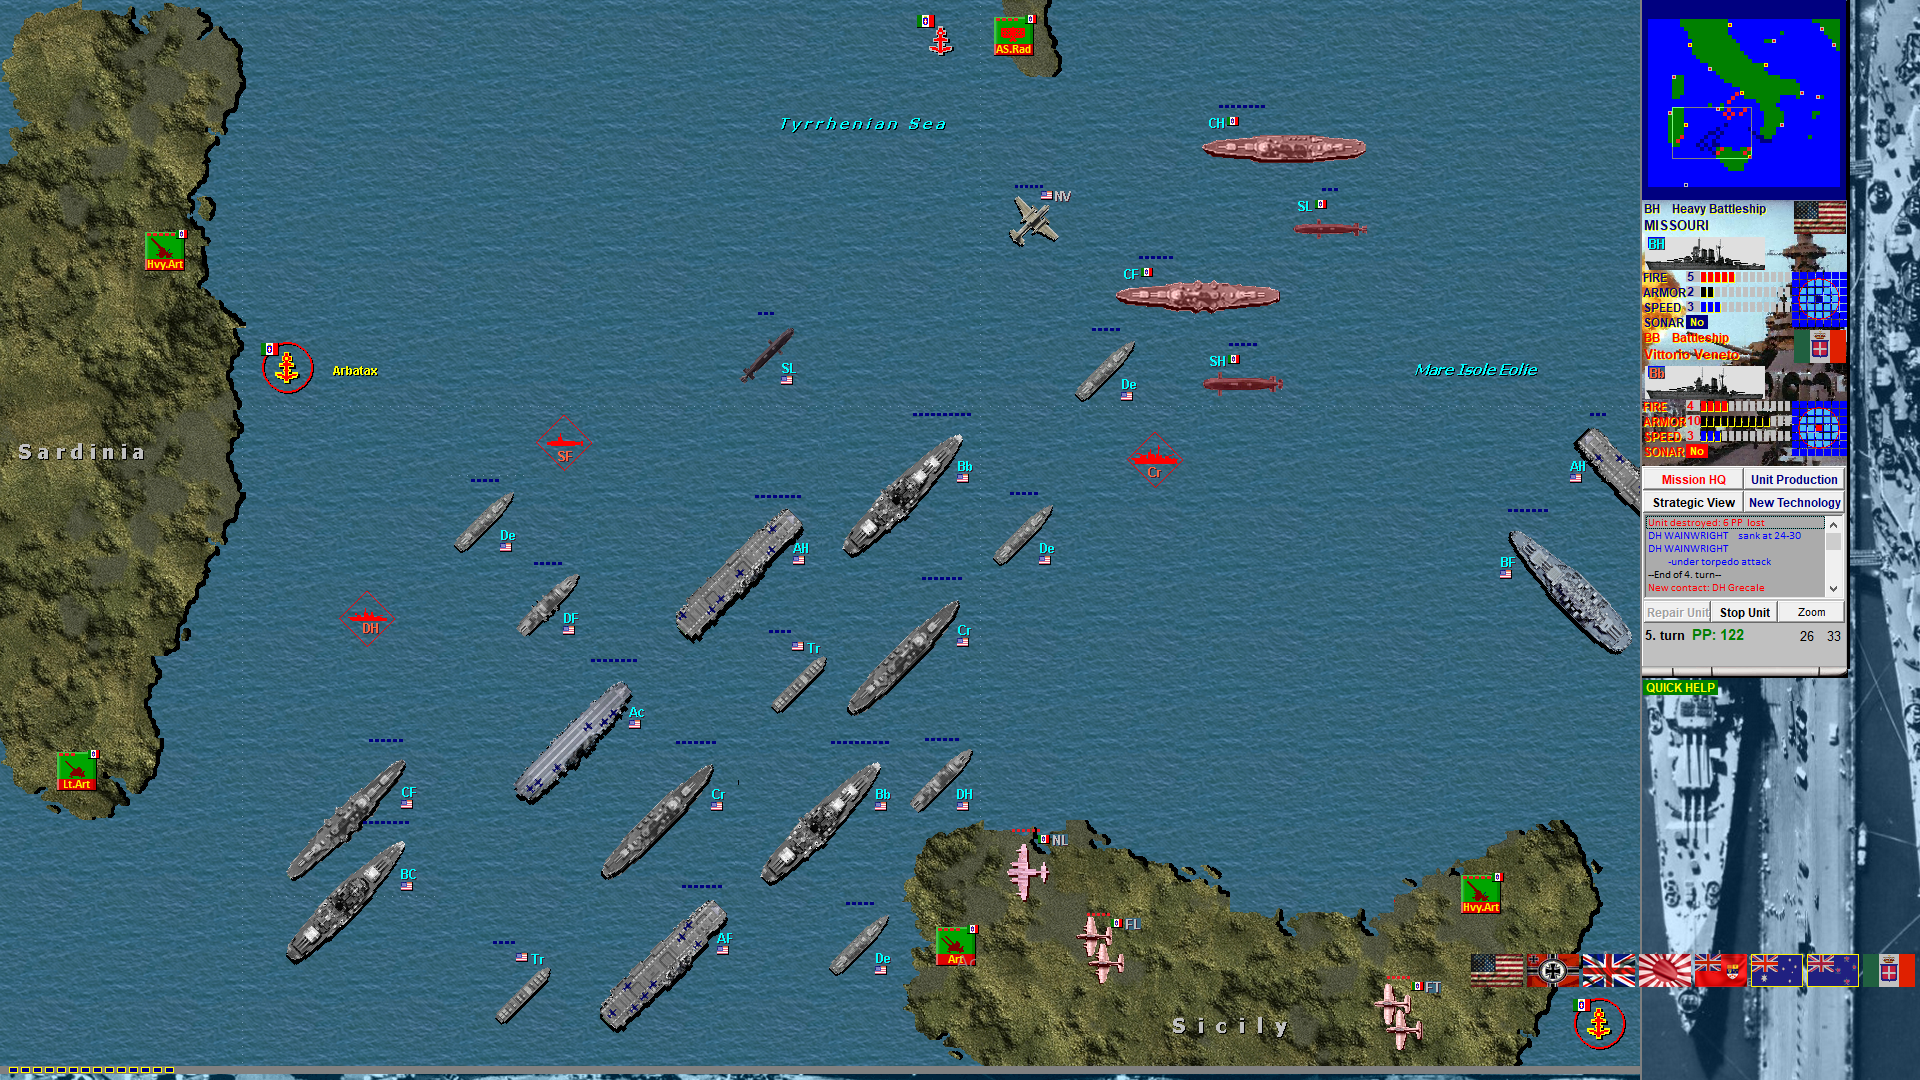 ww2 battleships games